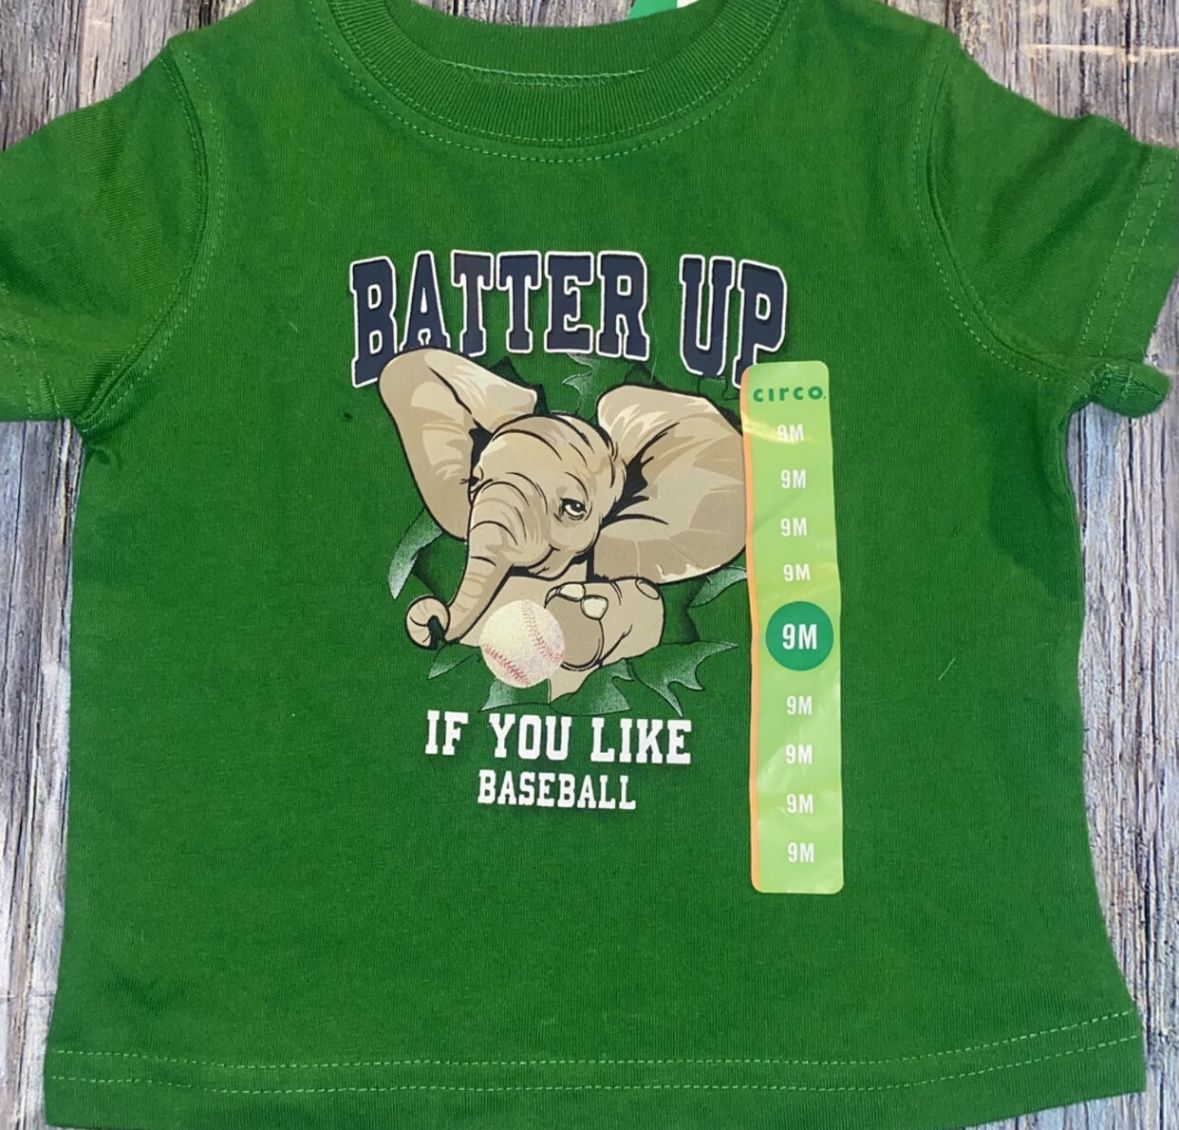 New Baby Boy Size 9 months Green “Batter Up” Elephant Baseball Tee Shirt